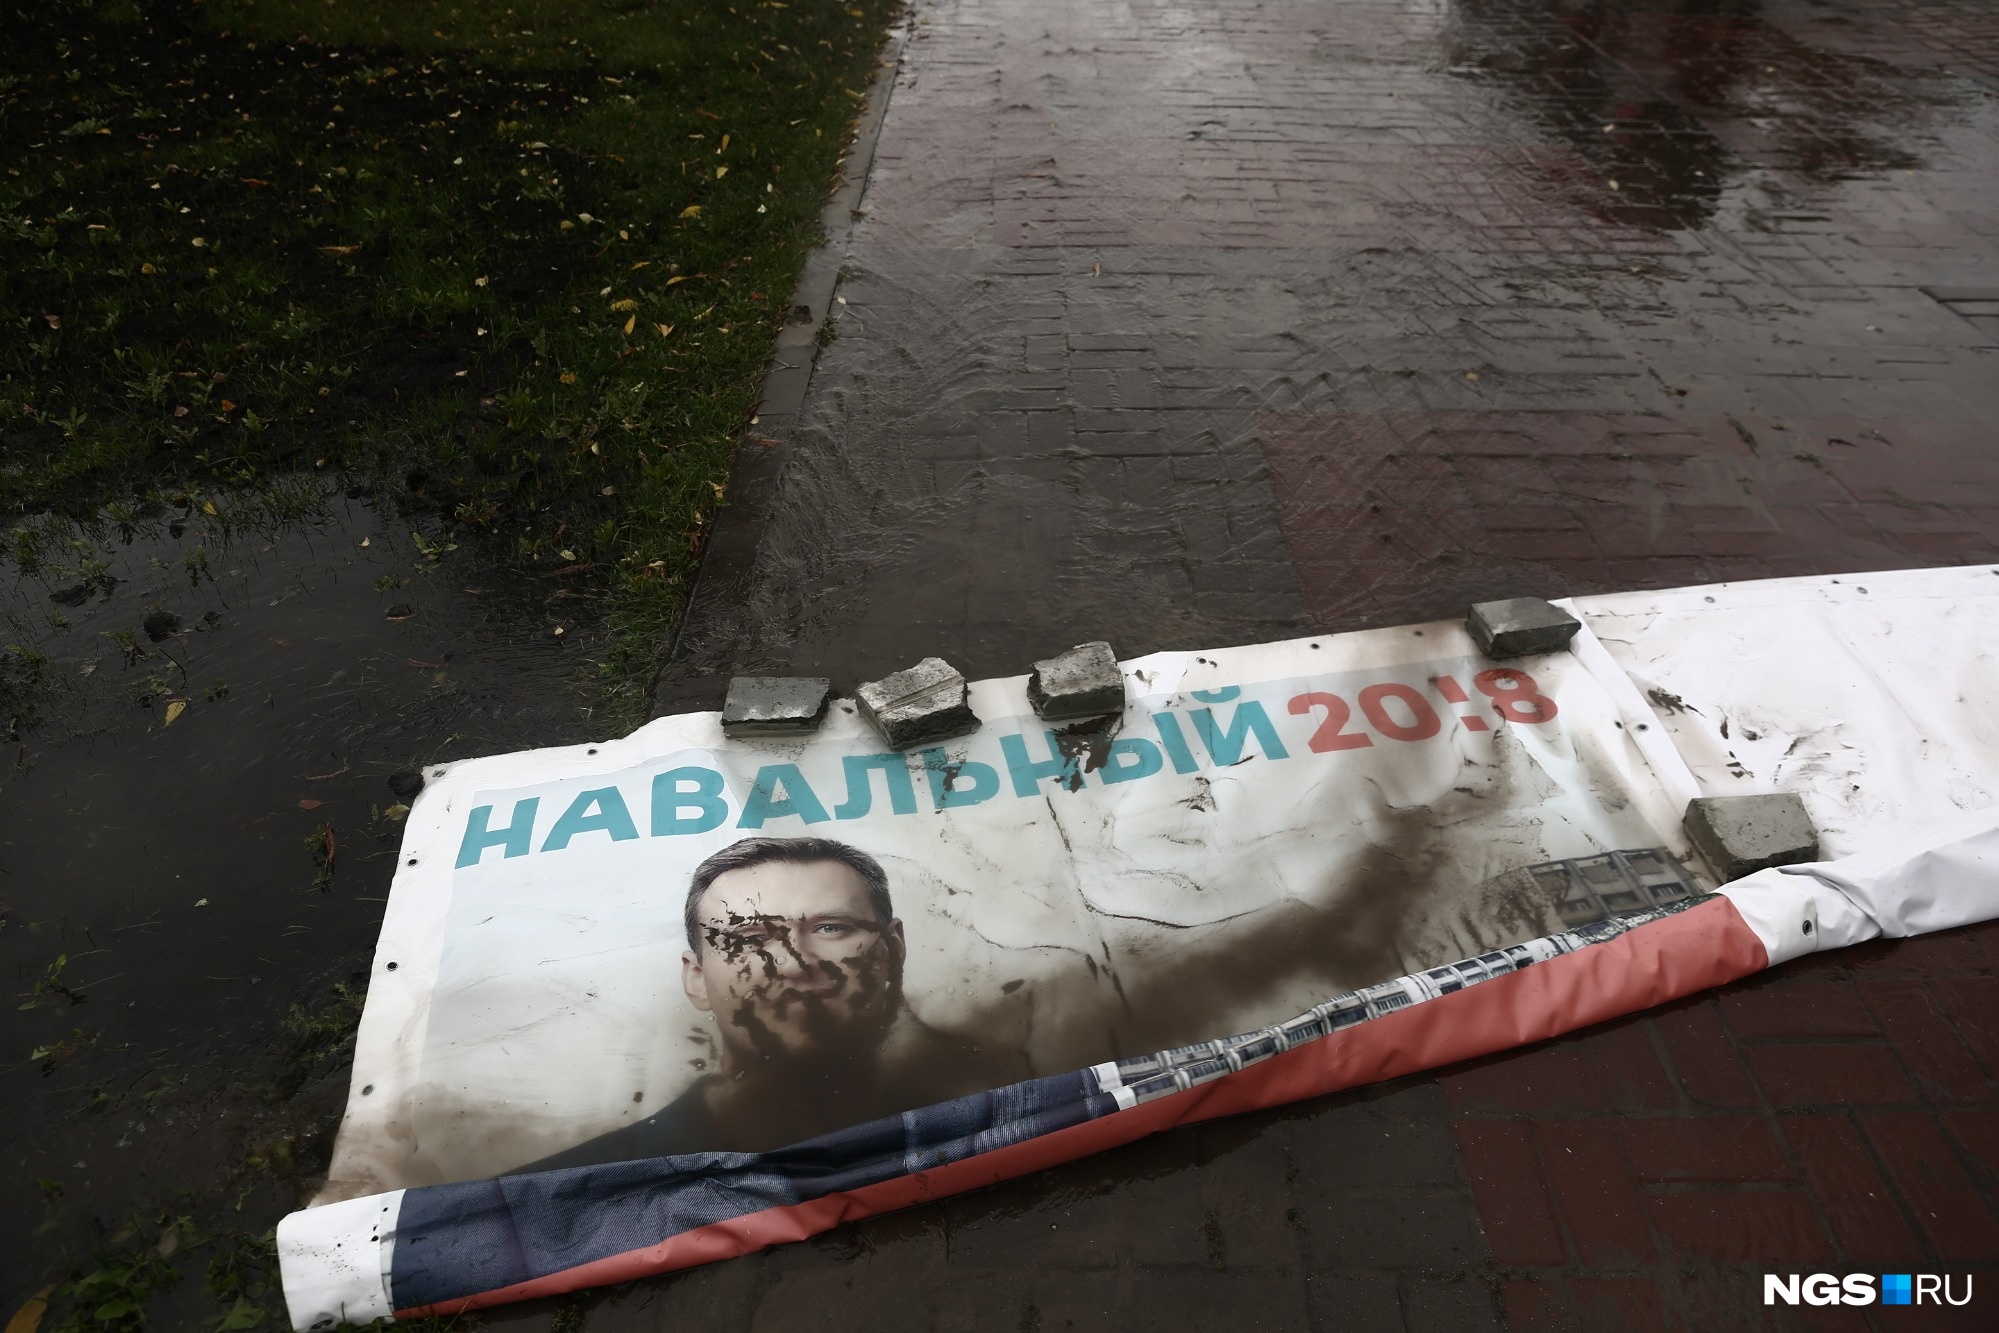 Последствия потопа на набережной — плакаты с Навальным в грязи. Фото Александра Ощепкова